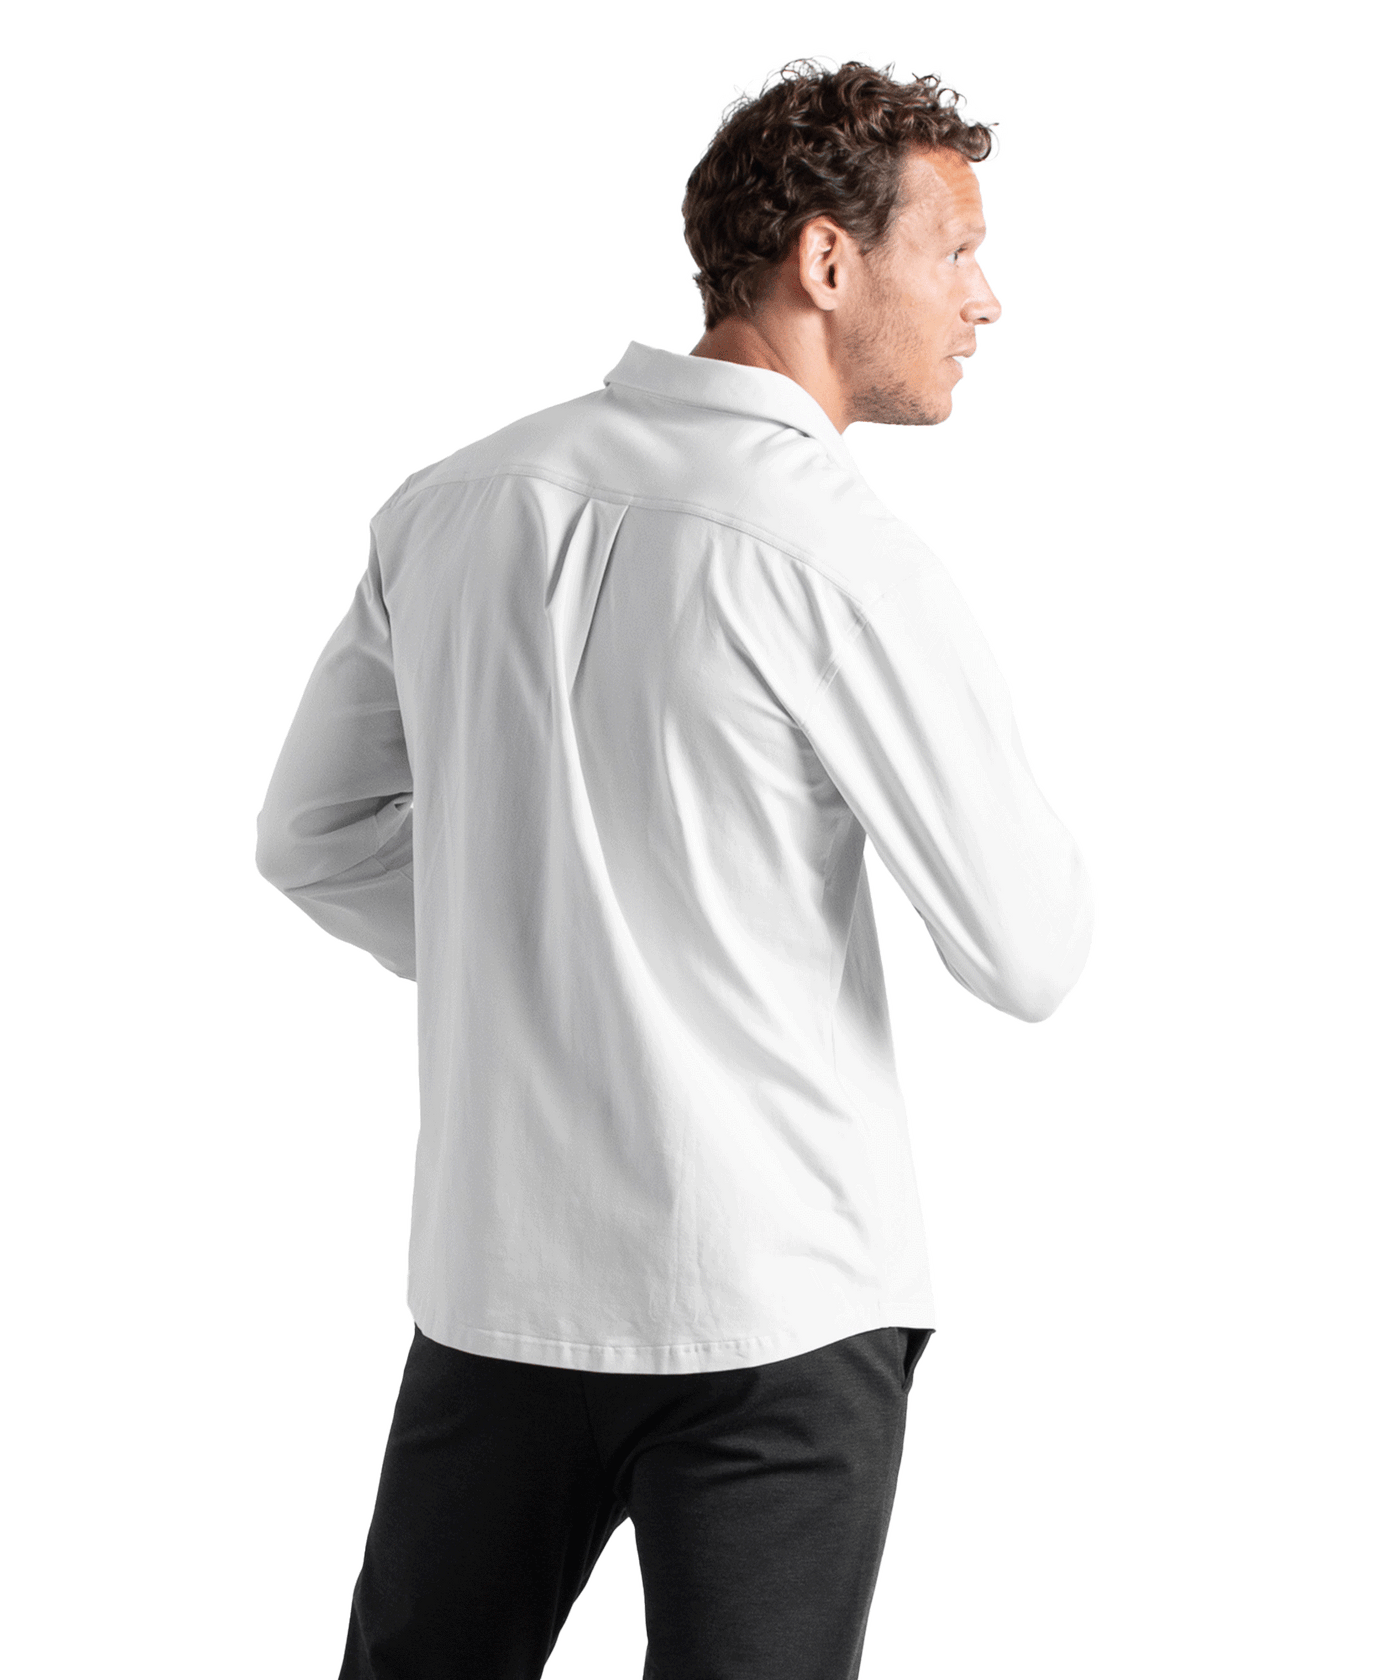 CLEANCUT - Clean Formal - Shirt - White